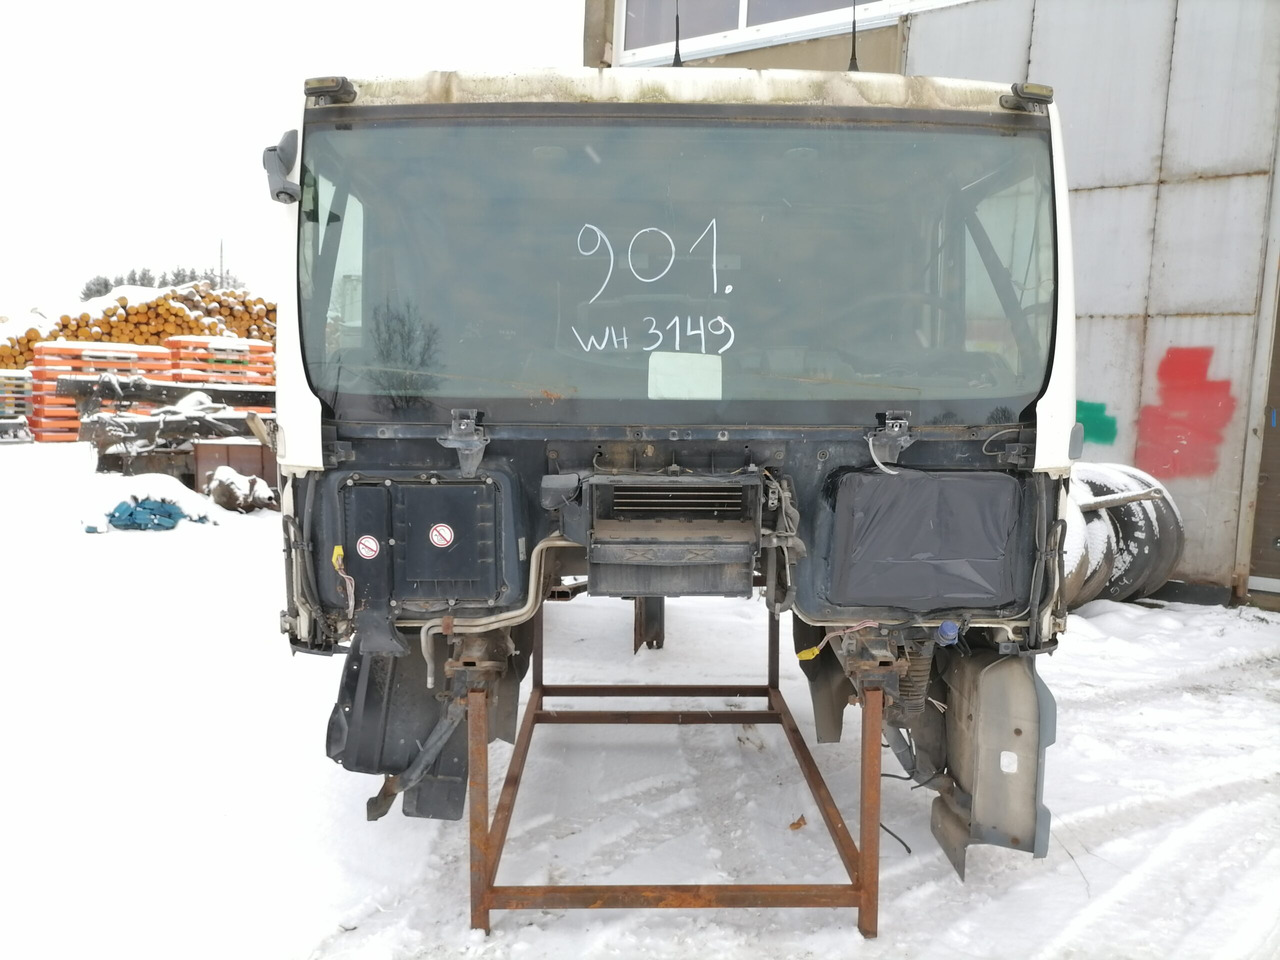 Cabine e interior de Caminhão MAN Cab TG460: foto 2